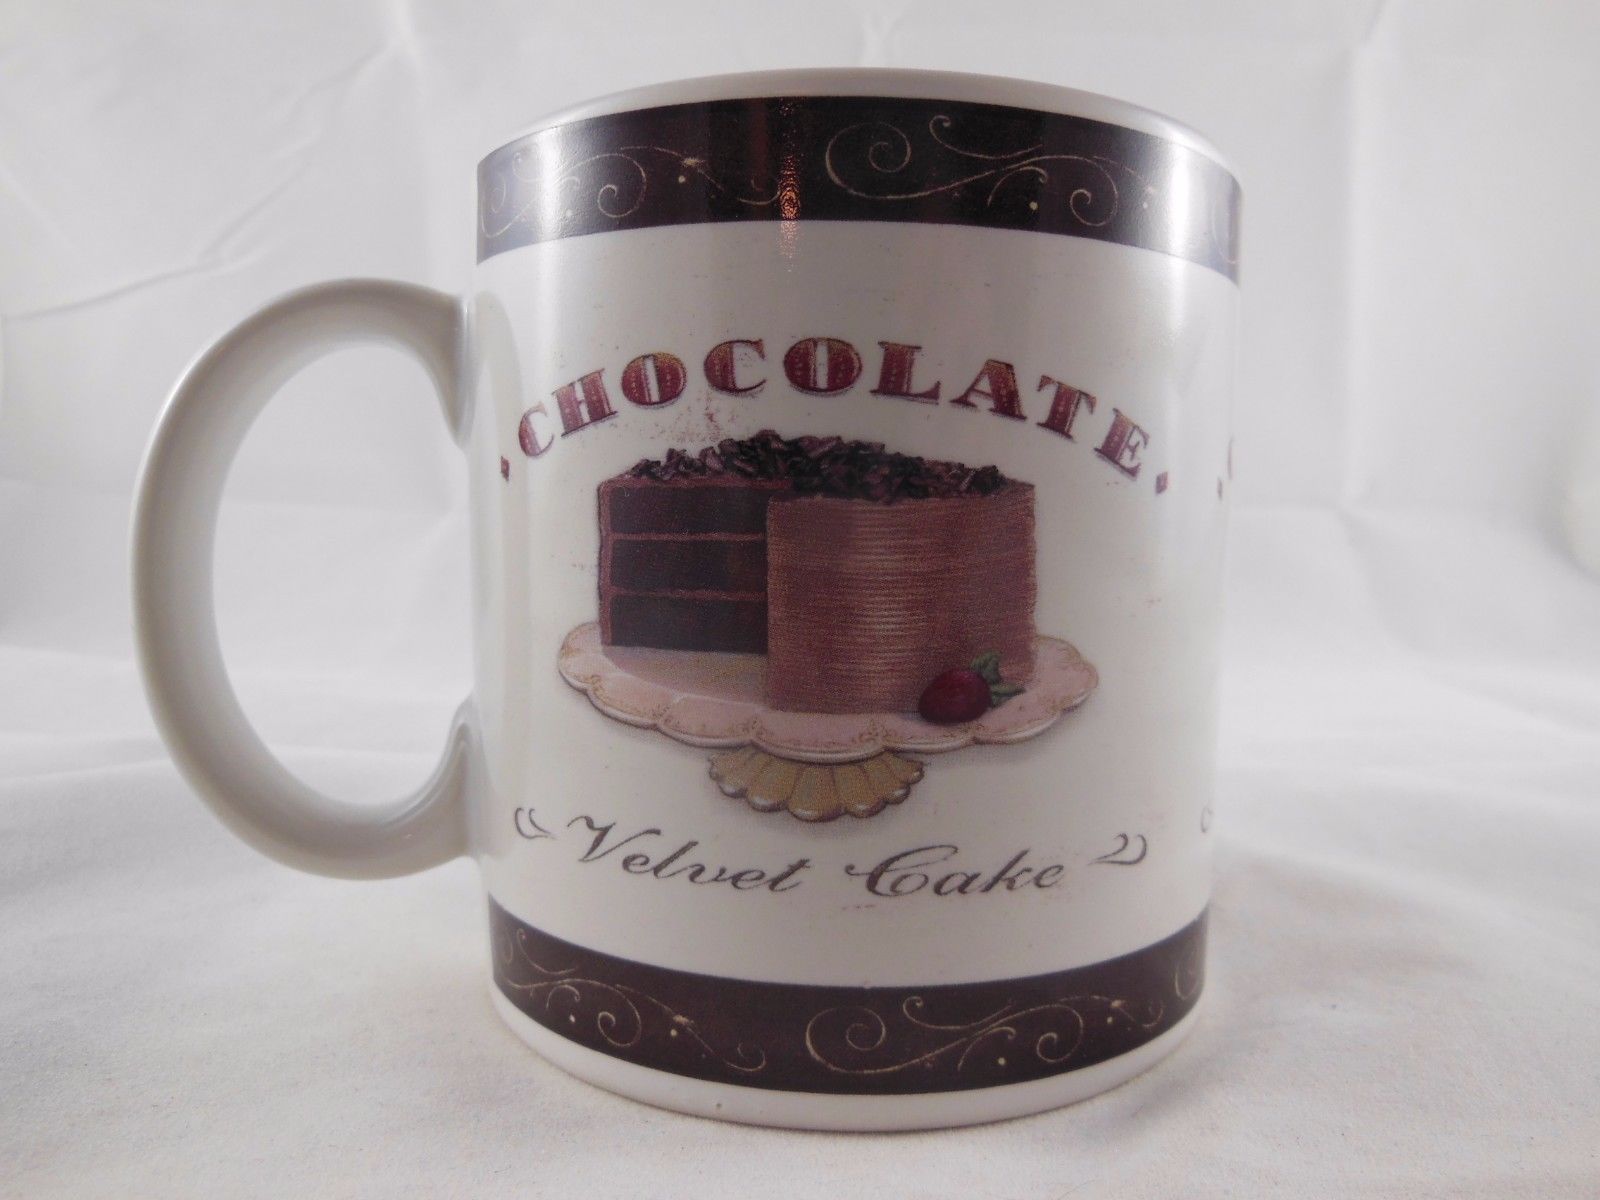  Chocolate Velvet Cake  Angela Staehling Stoneware Sweets Coffee Mug Oneida 12oz - $7.91